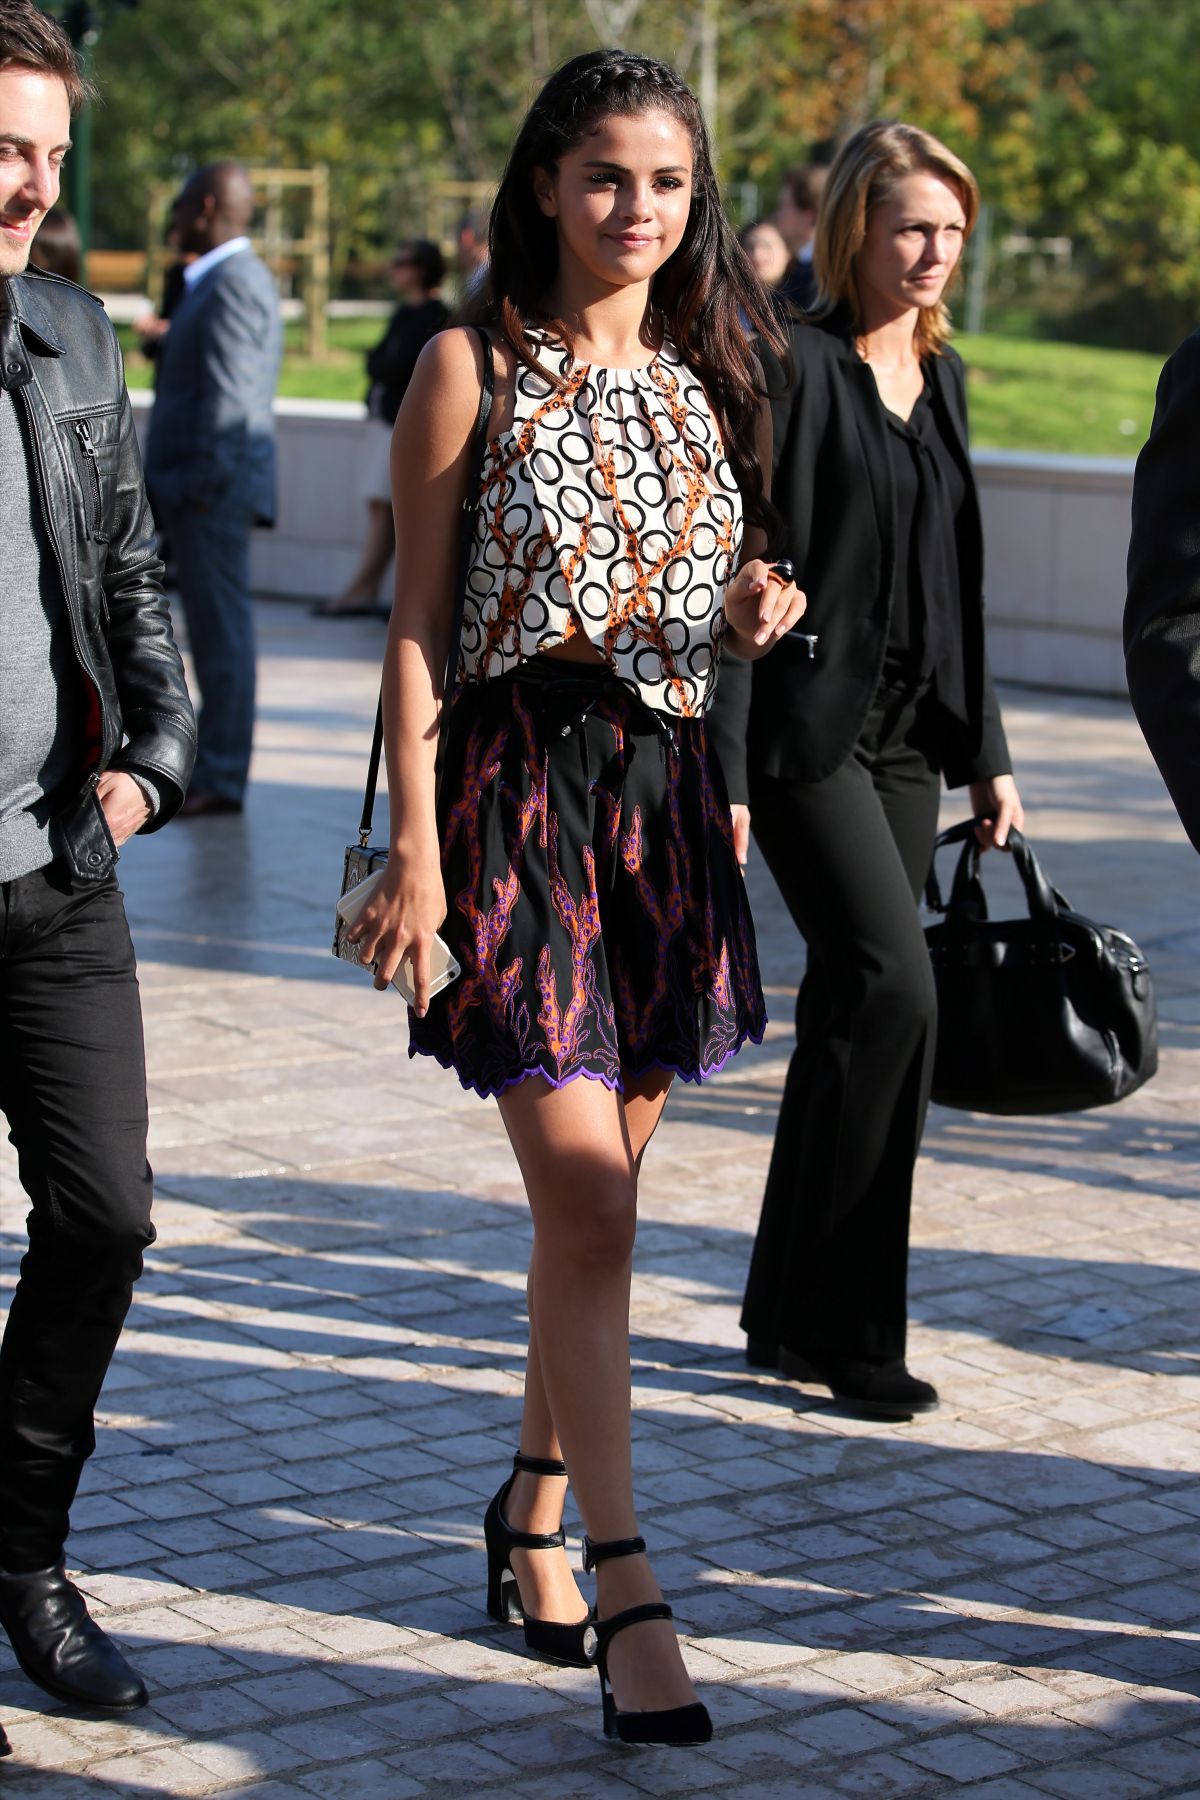 Selena Gomez Talks About Louis Vuitton Ads